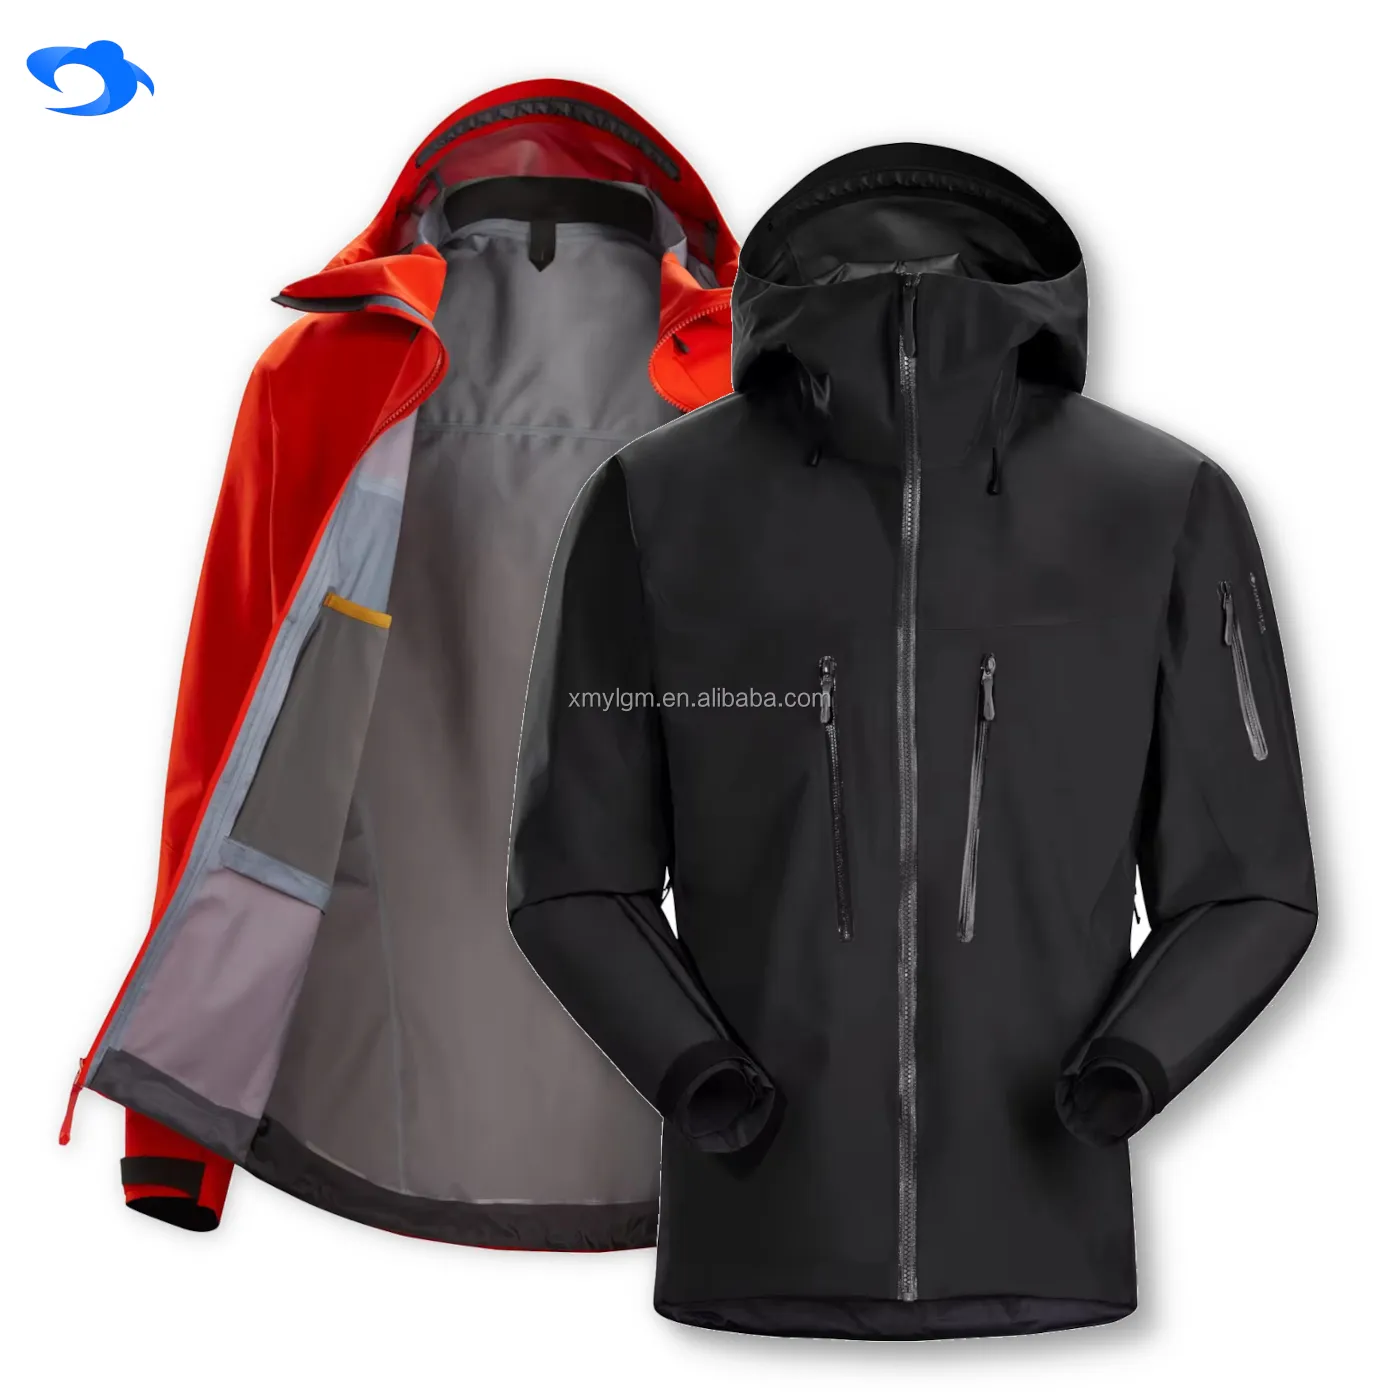 Individuelle Herren Outdoor-Wasserdichte Jacke mit Kapuze packbare leichte Windjacke Softshell Regenjacken für Wandern